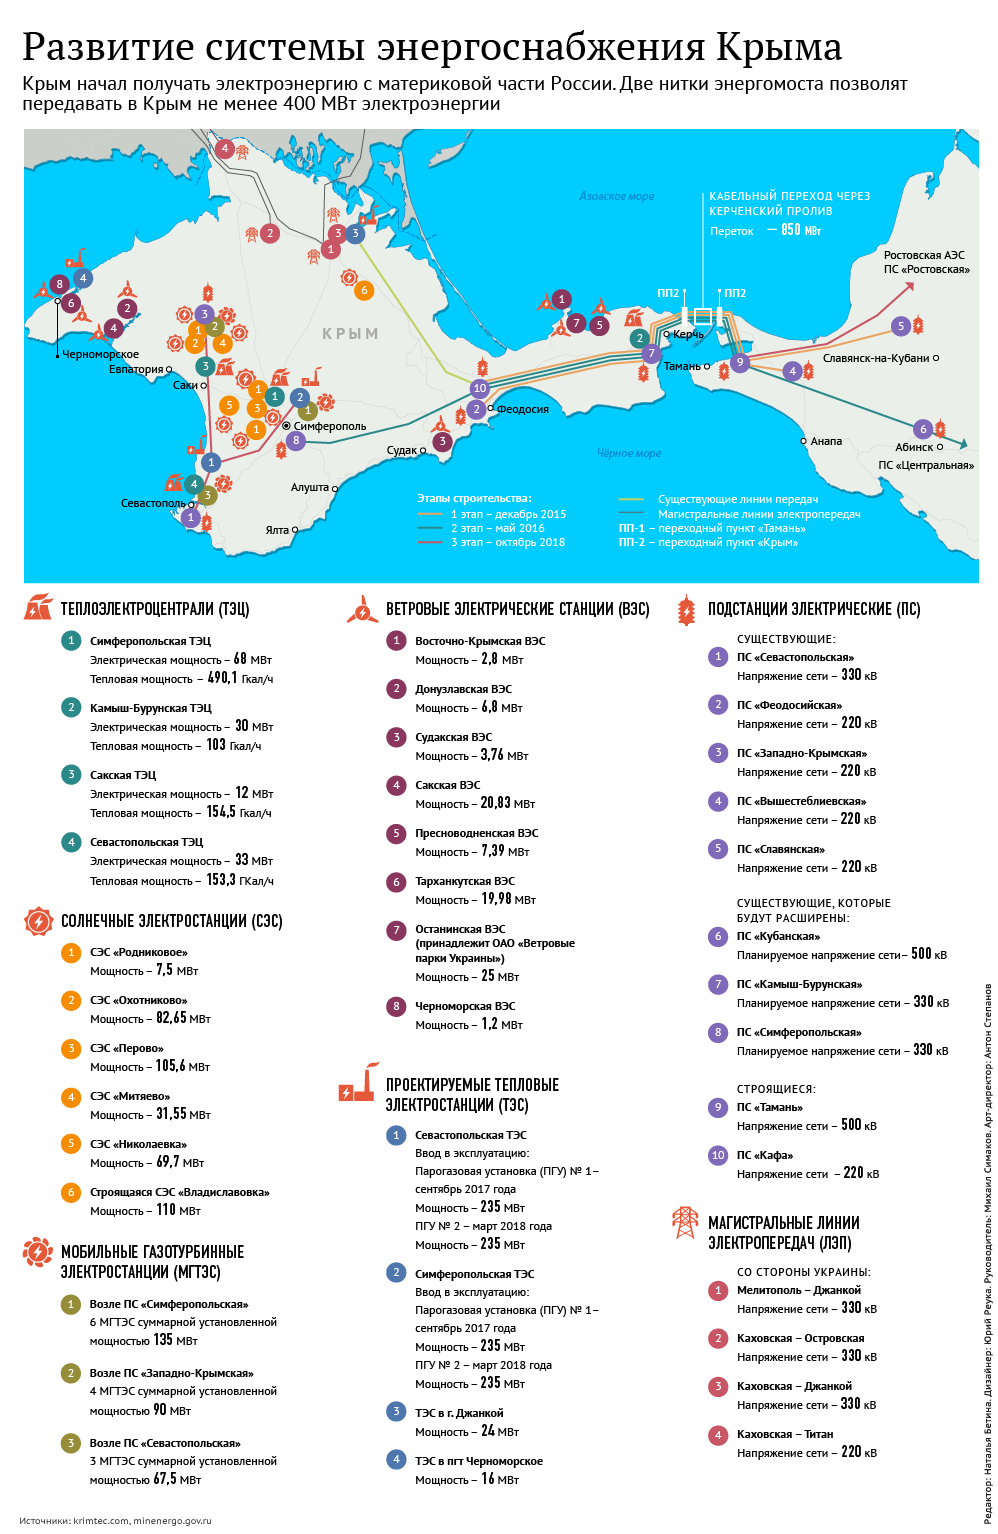 Развитие системы энергоснабжения Крыма. Инфографика